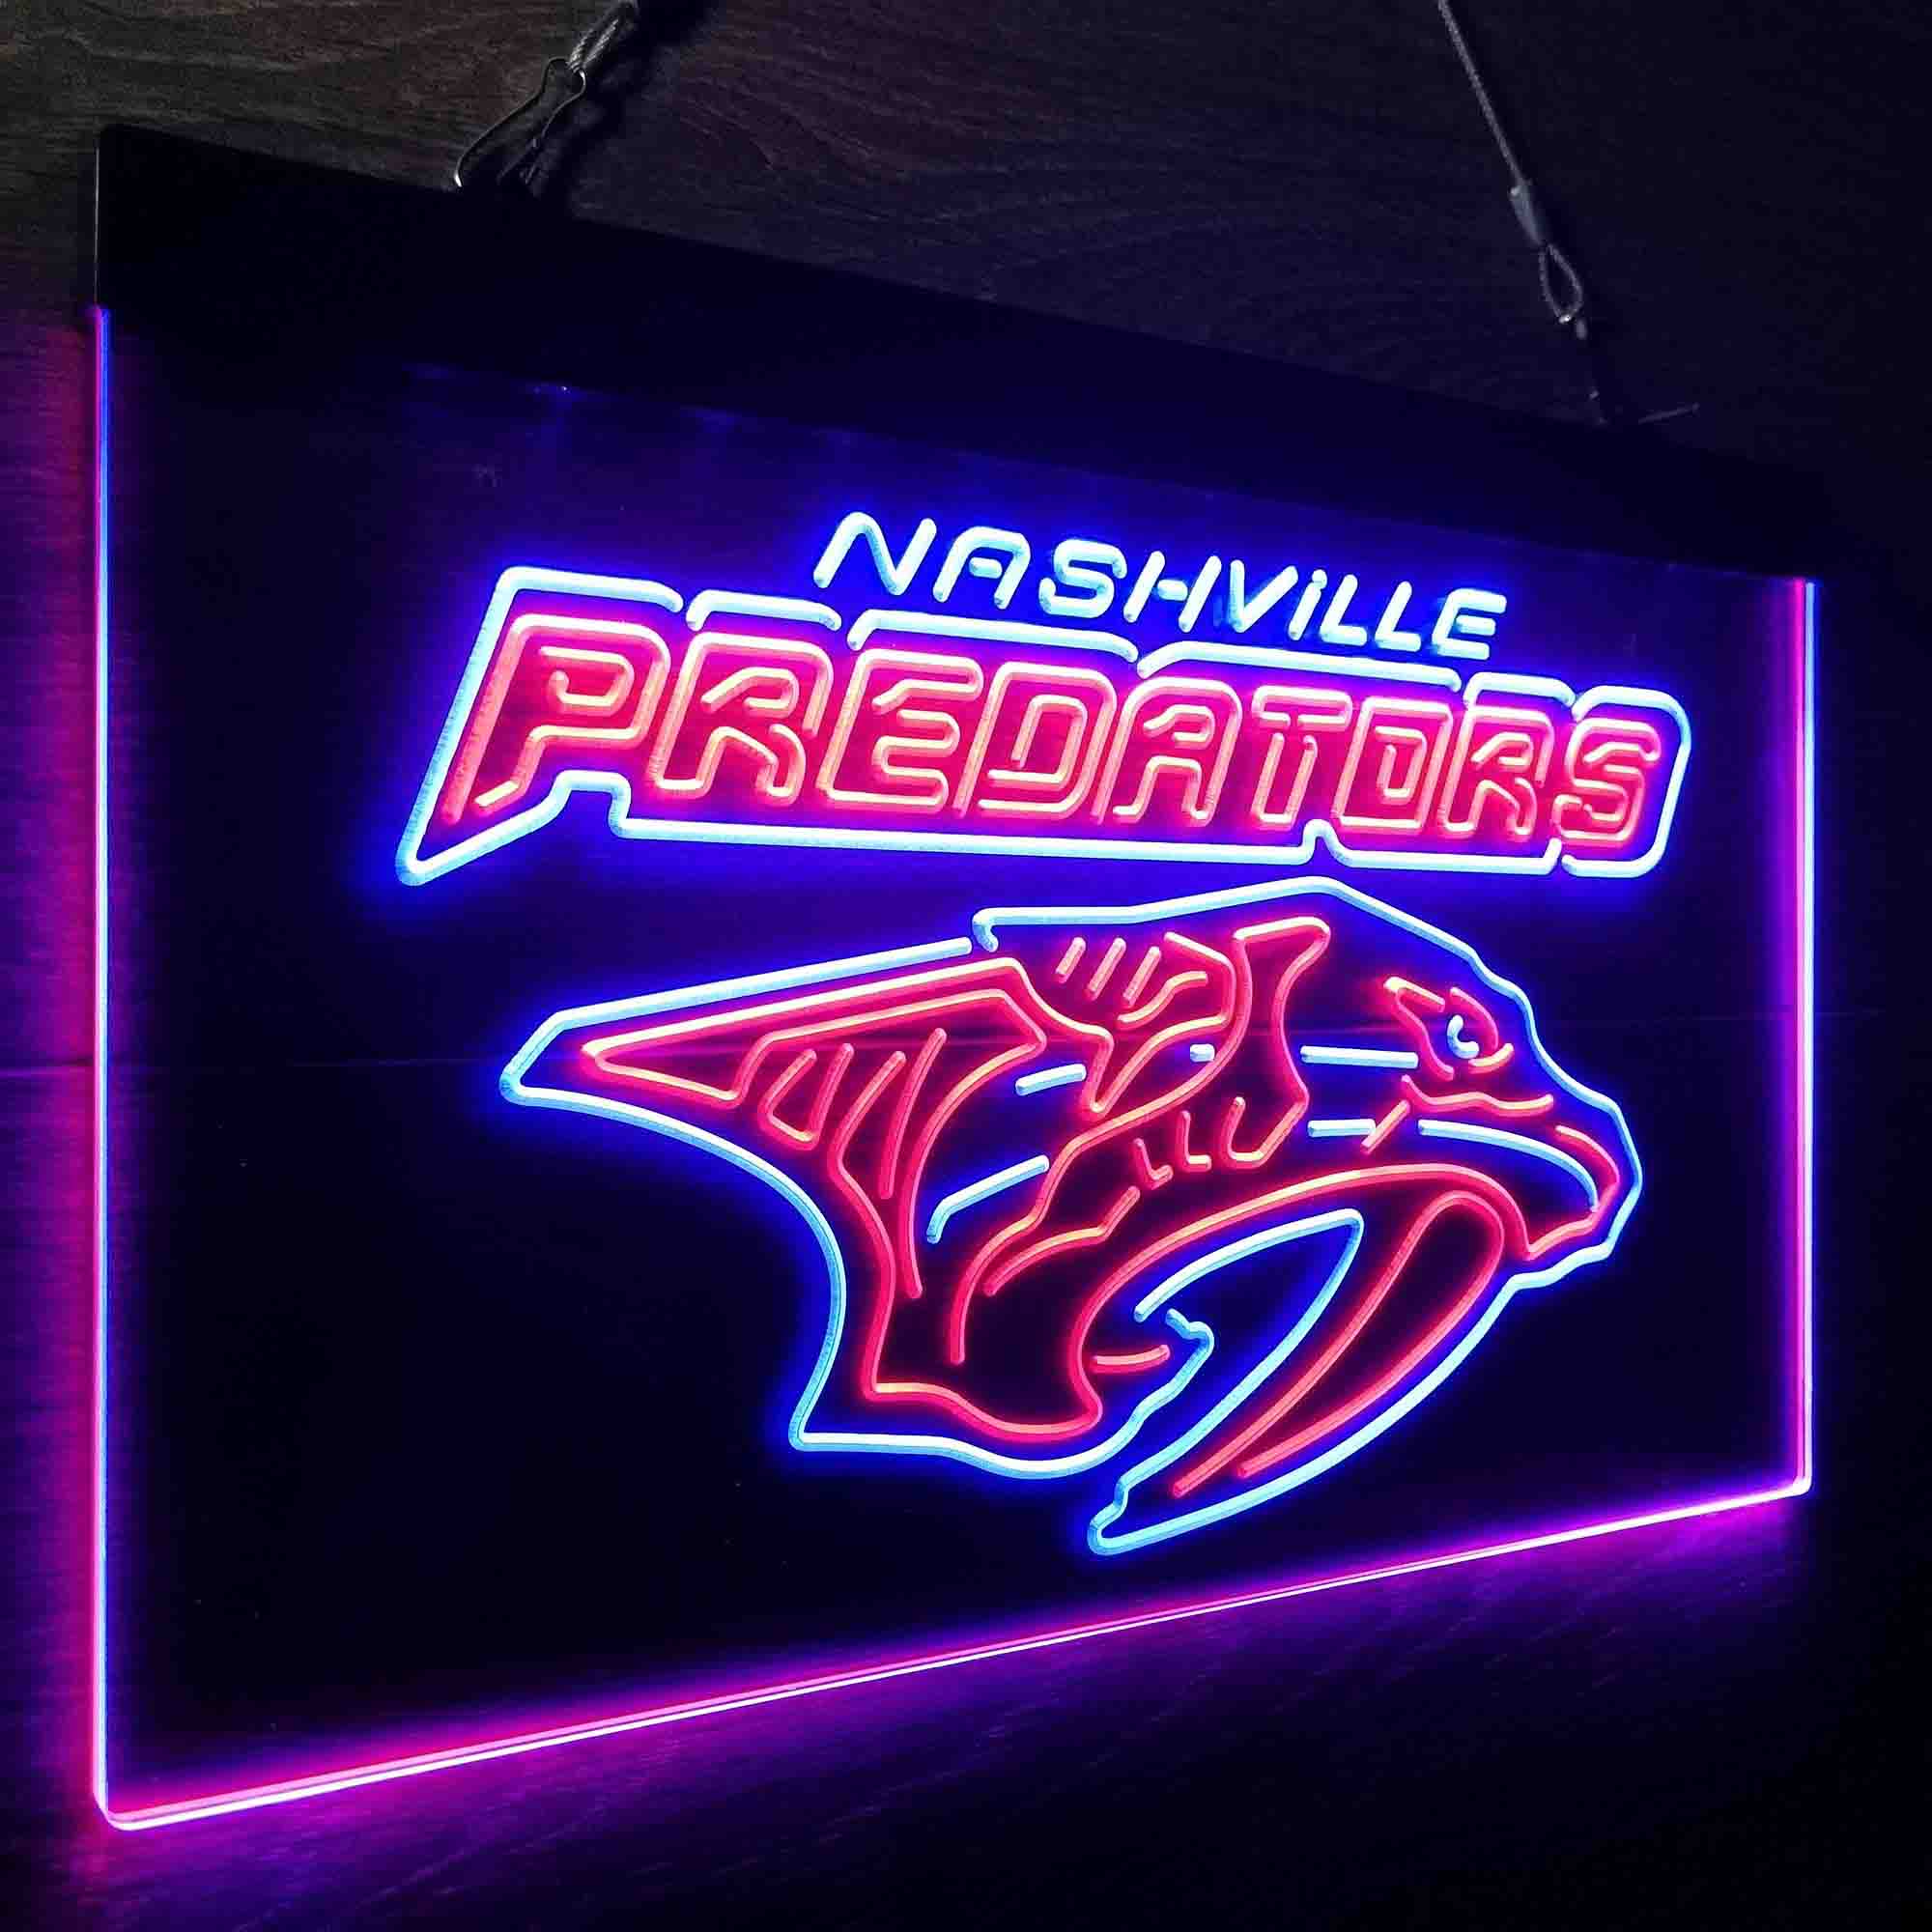 Nashville Sport Team League Club Predators LED Neon Sign